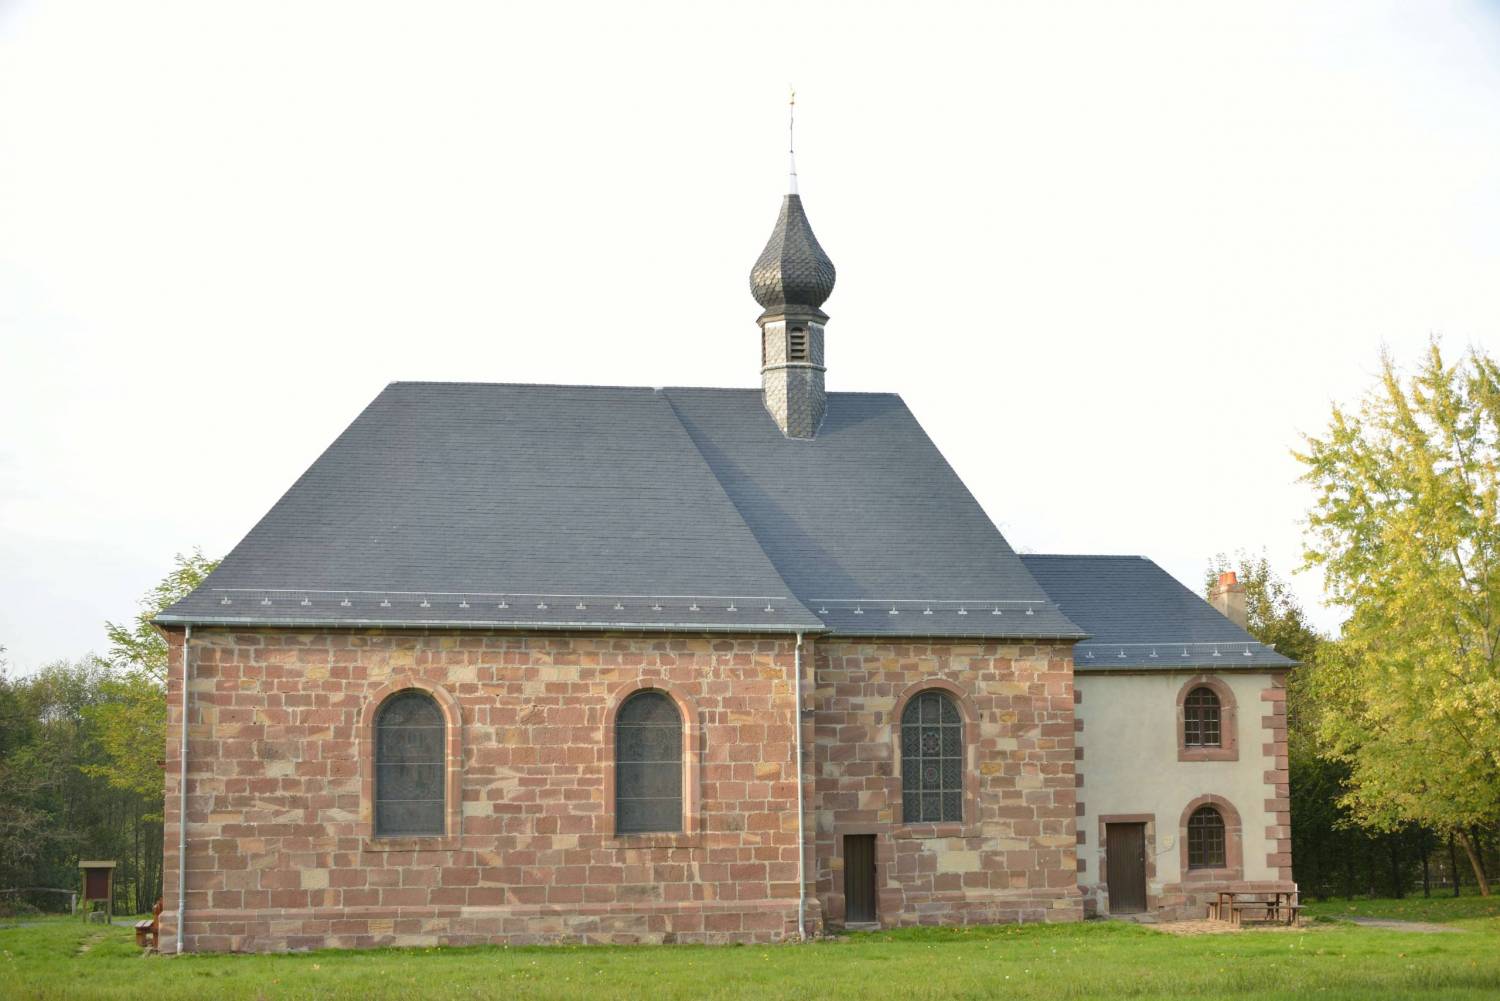 Métairies-Saint-Quirin (Moselle) Eglise et ermitage ND du Lhor